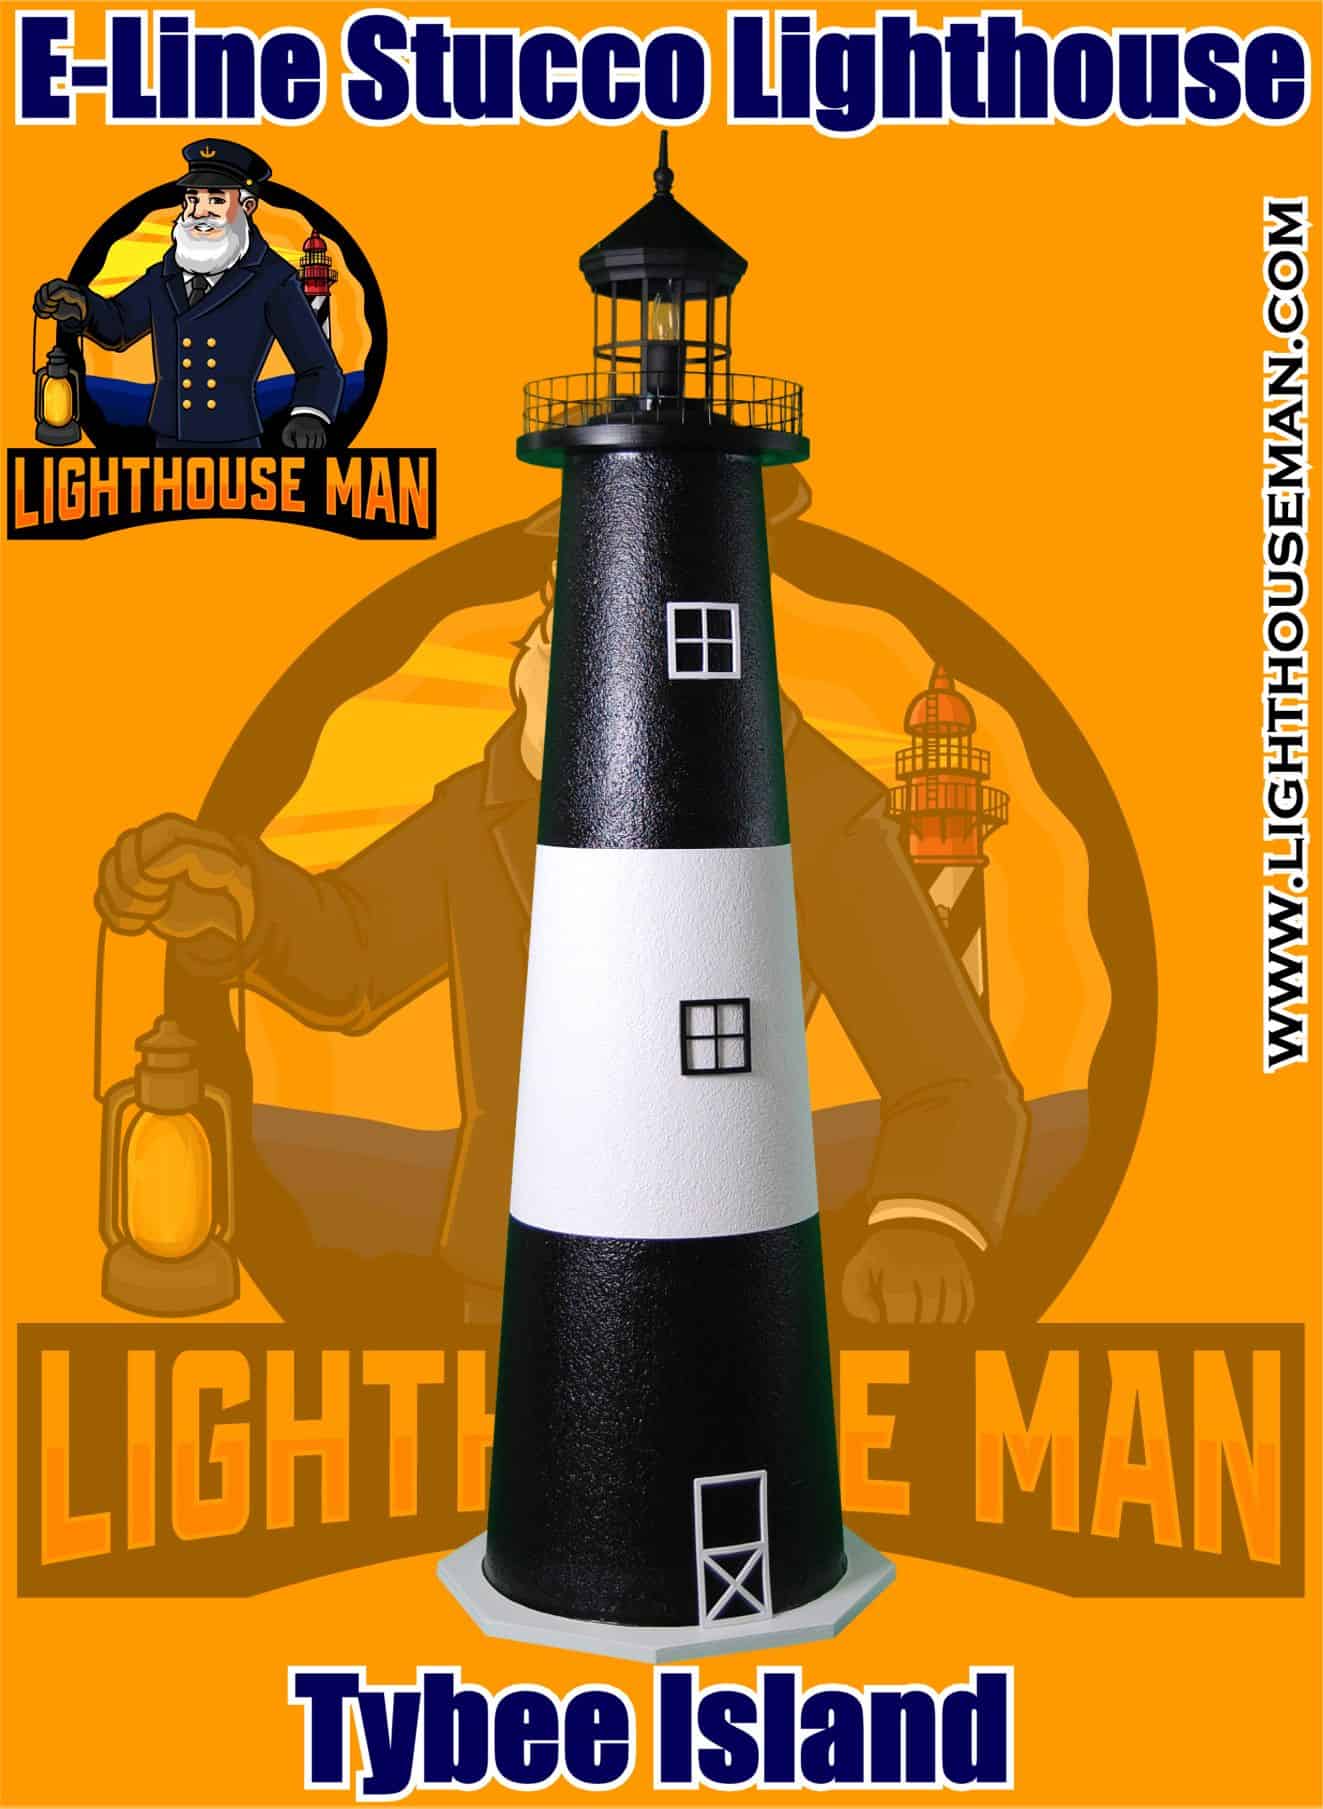 Tybee Island E-line Stucco Lighthouse